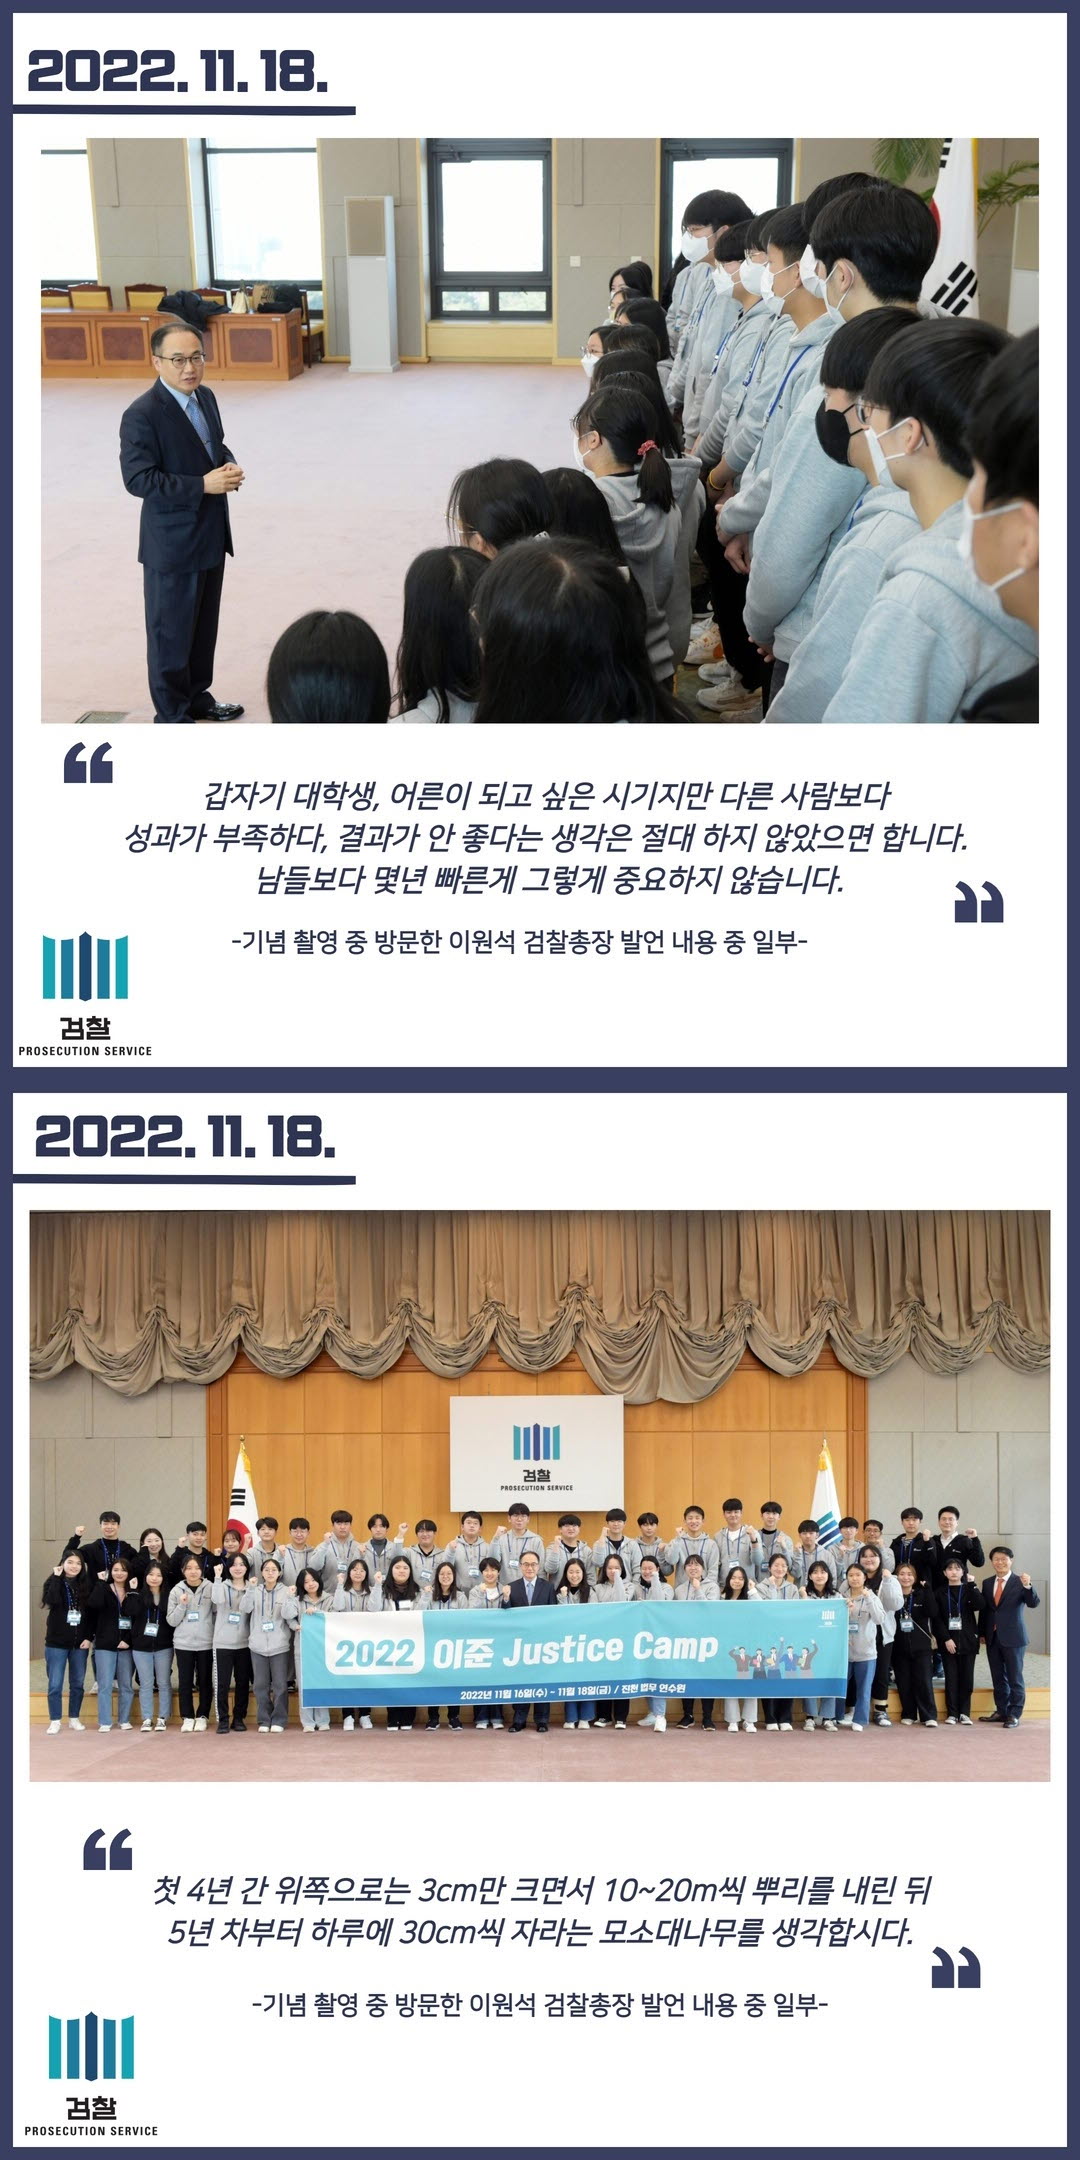 대검찰청, '2022 이준 저스티스 캠프' 개최 2번째